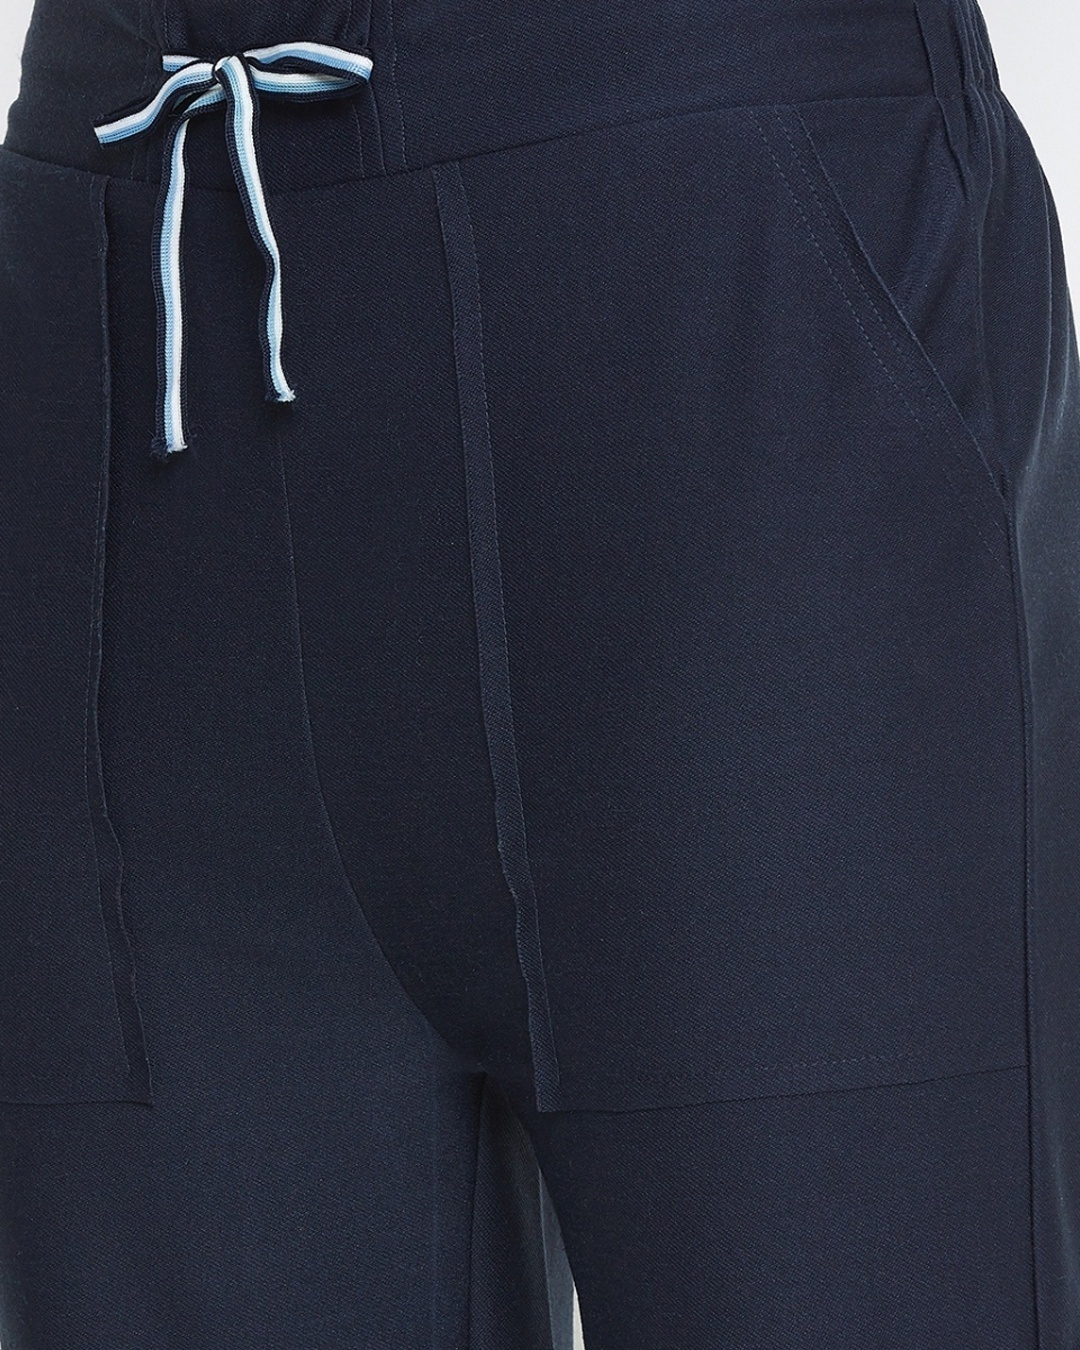 Shop Women's Blue Track Pants